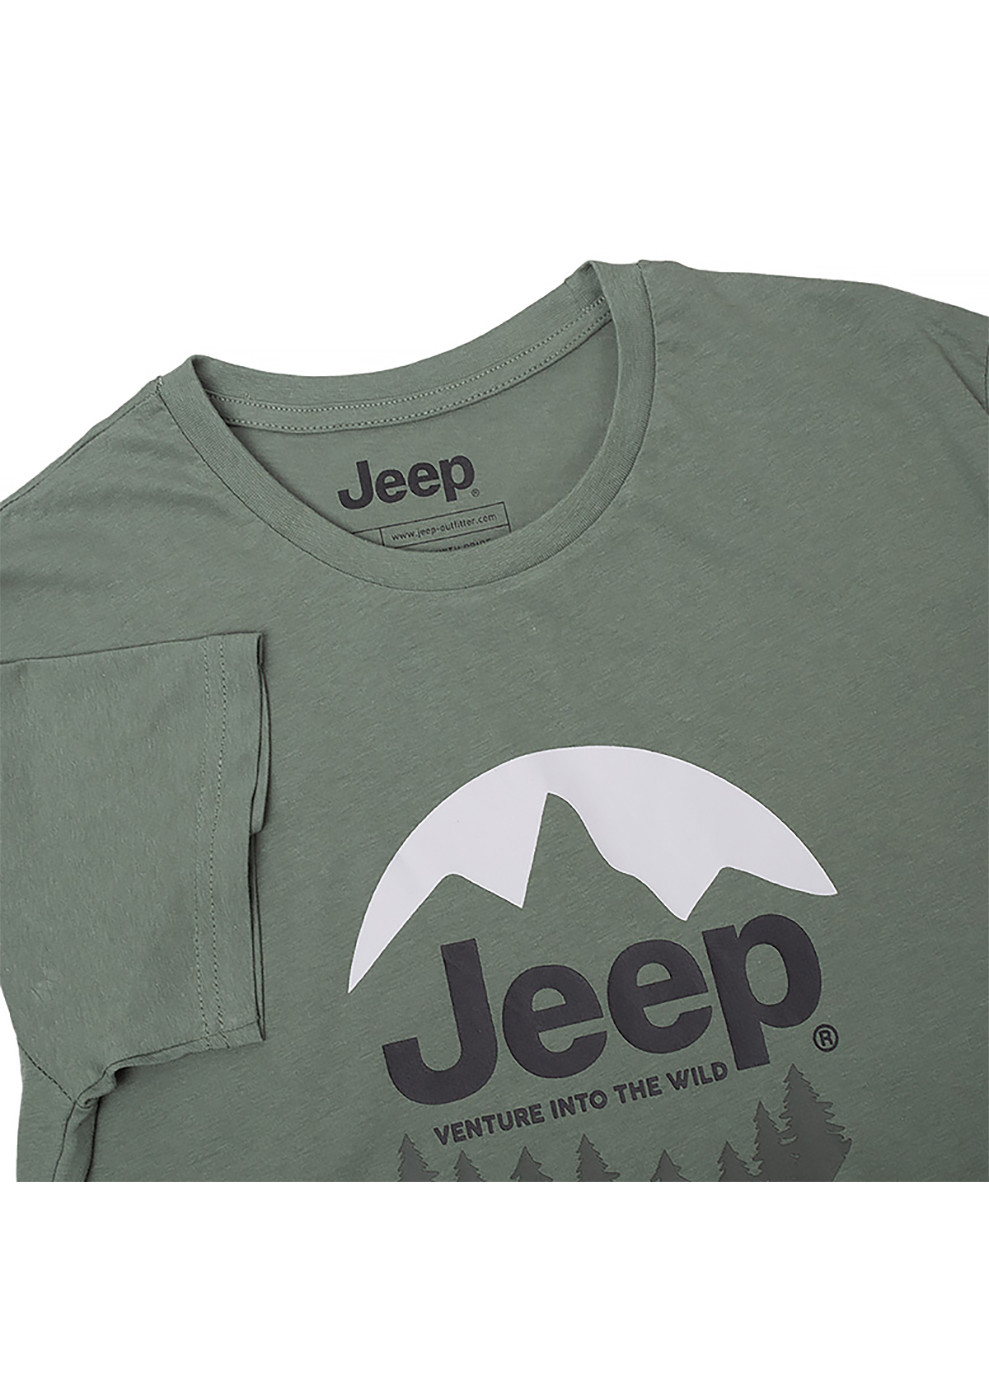 Хакі (оливкова) чоловіча футболка t-shirt the spirit of adventure хакі xl (o102588-e845 xl) Jeep